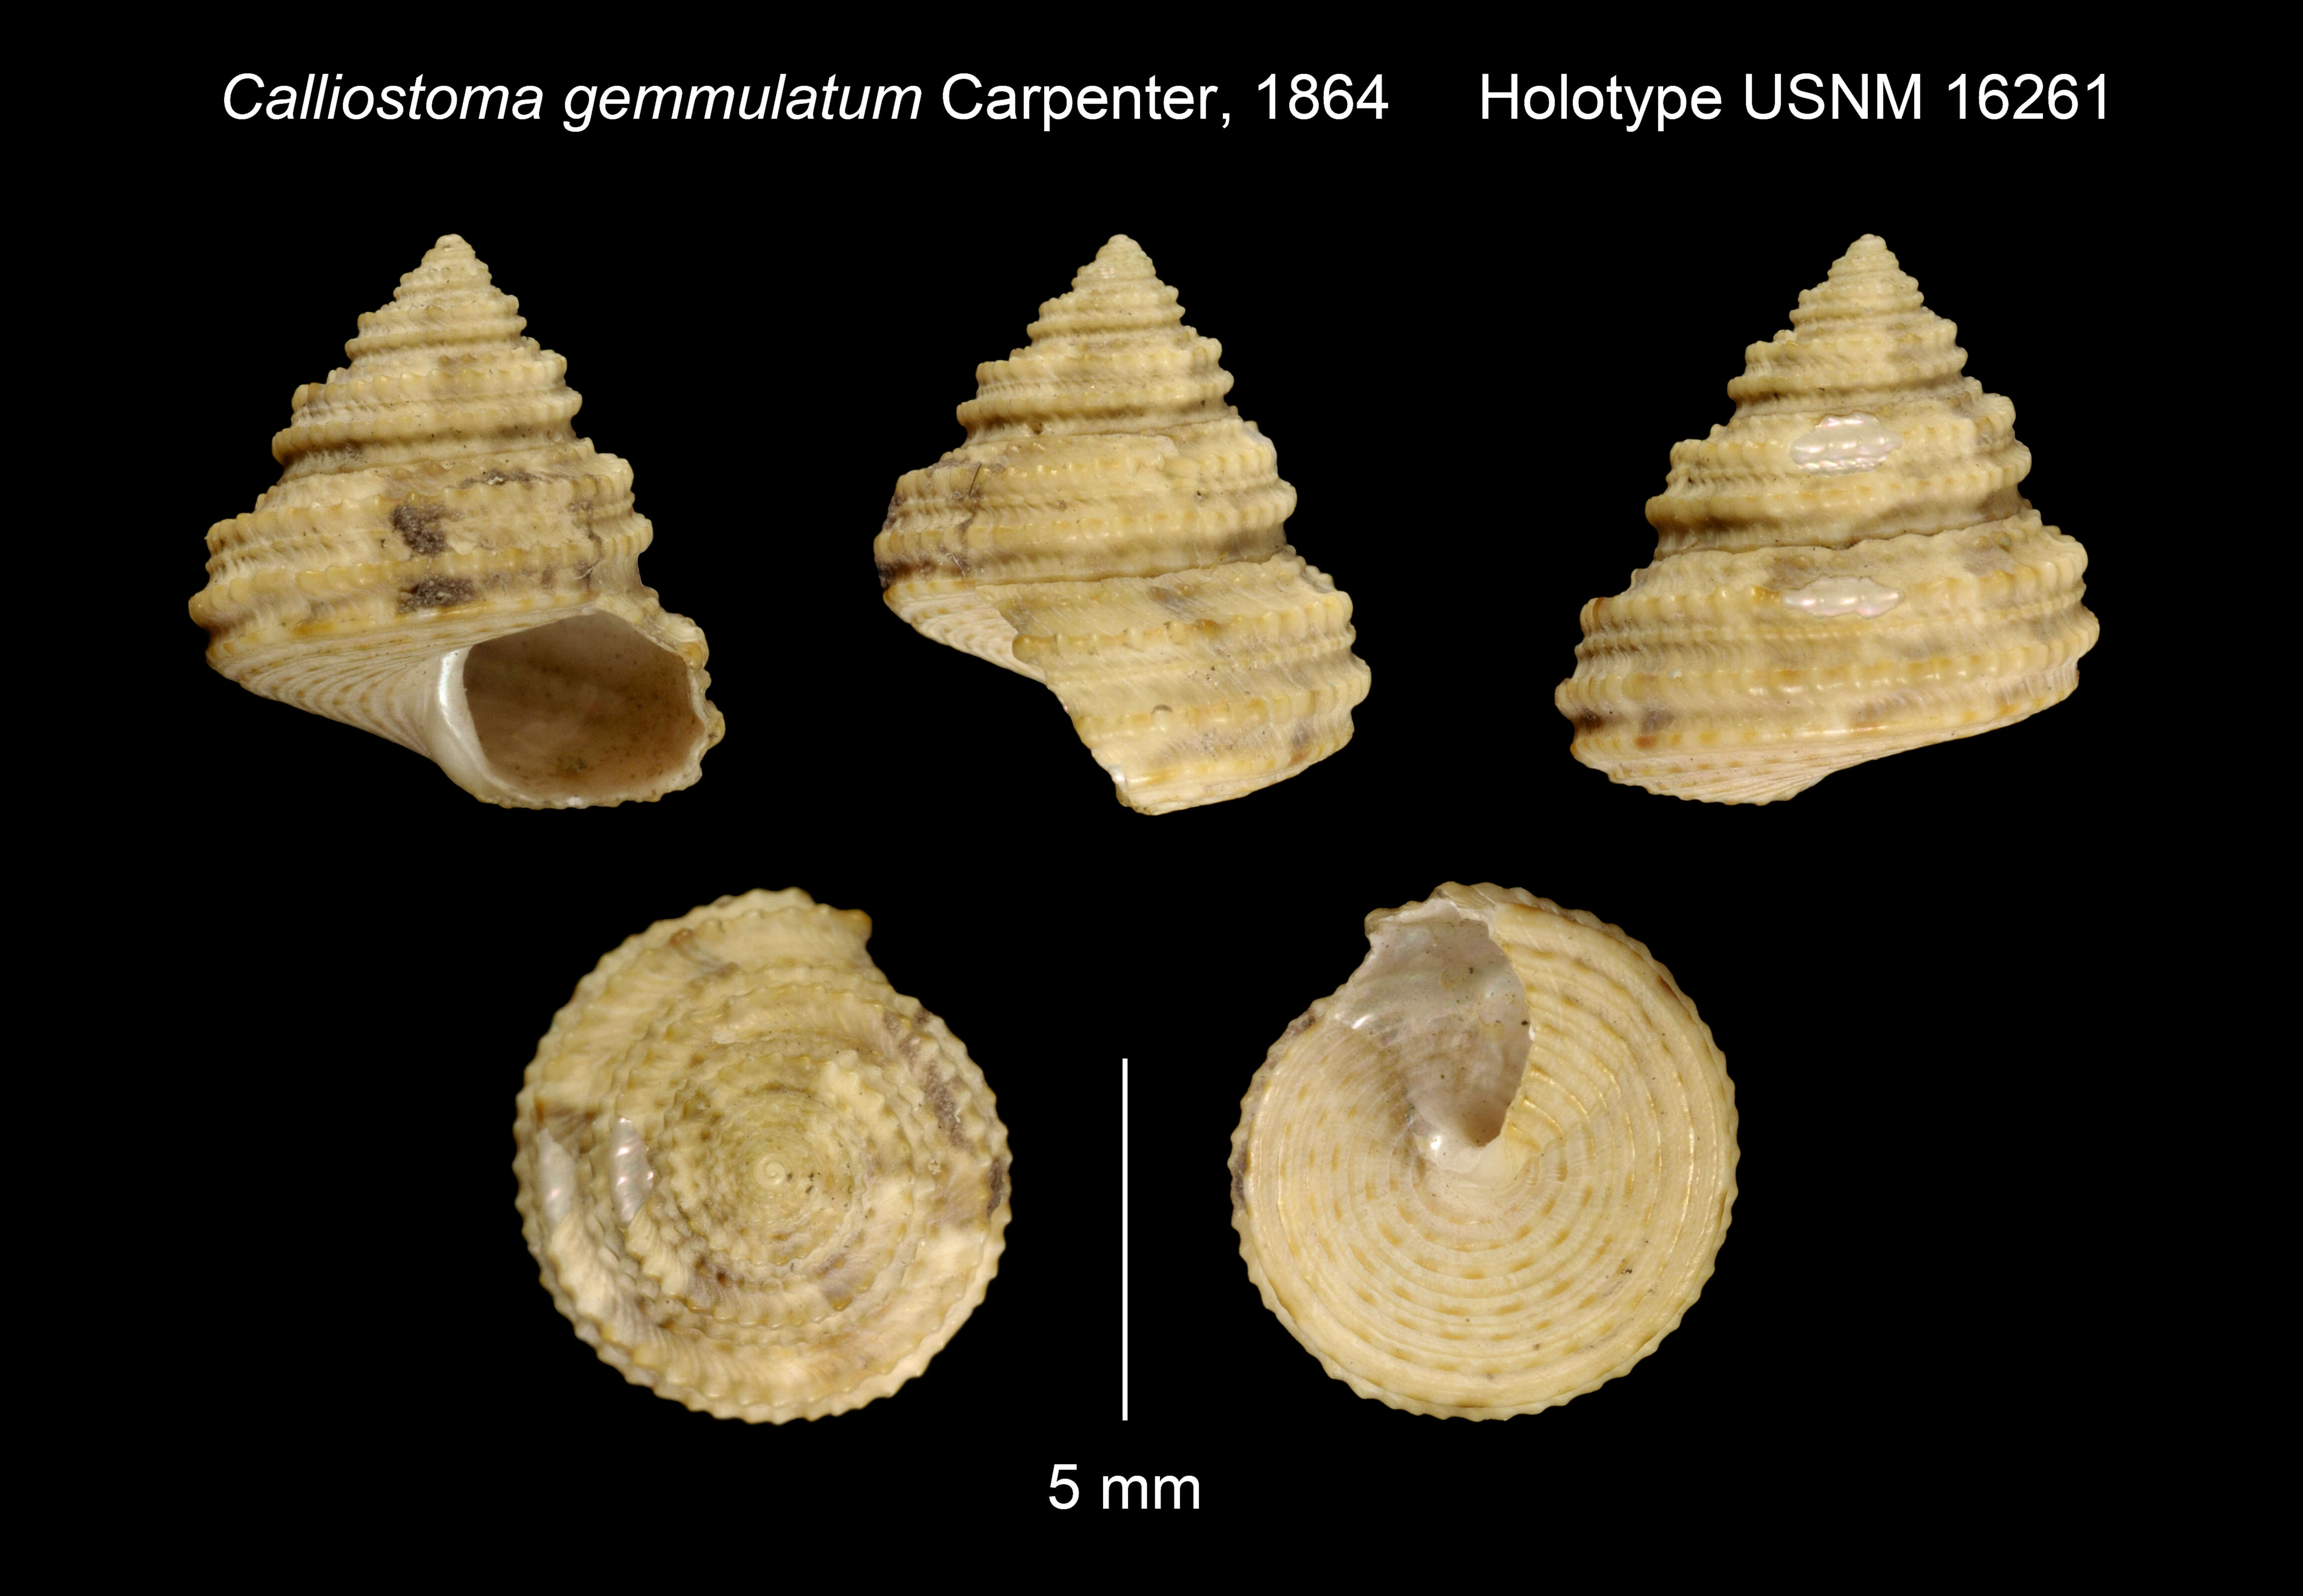 Image of Calliostoma gemmulatum Carpenter 1864